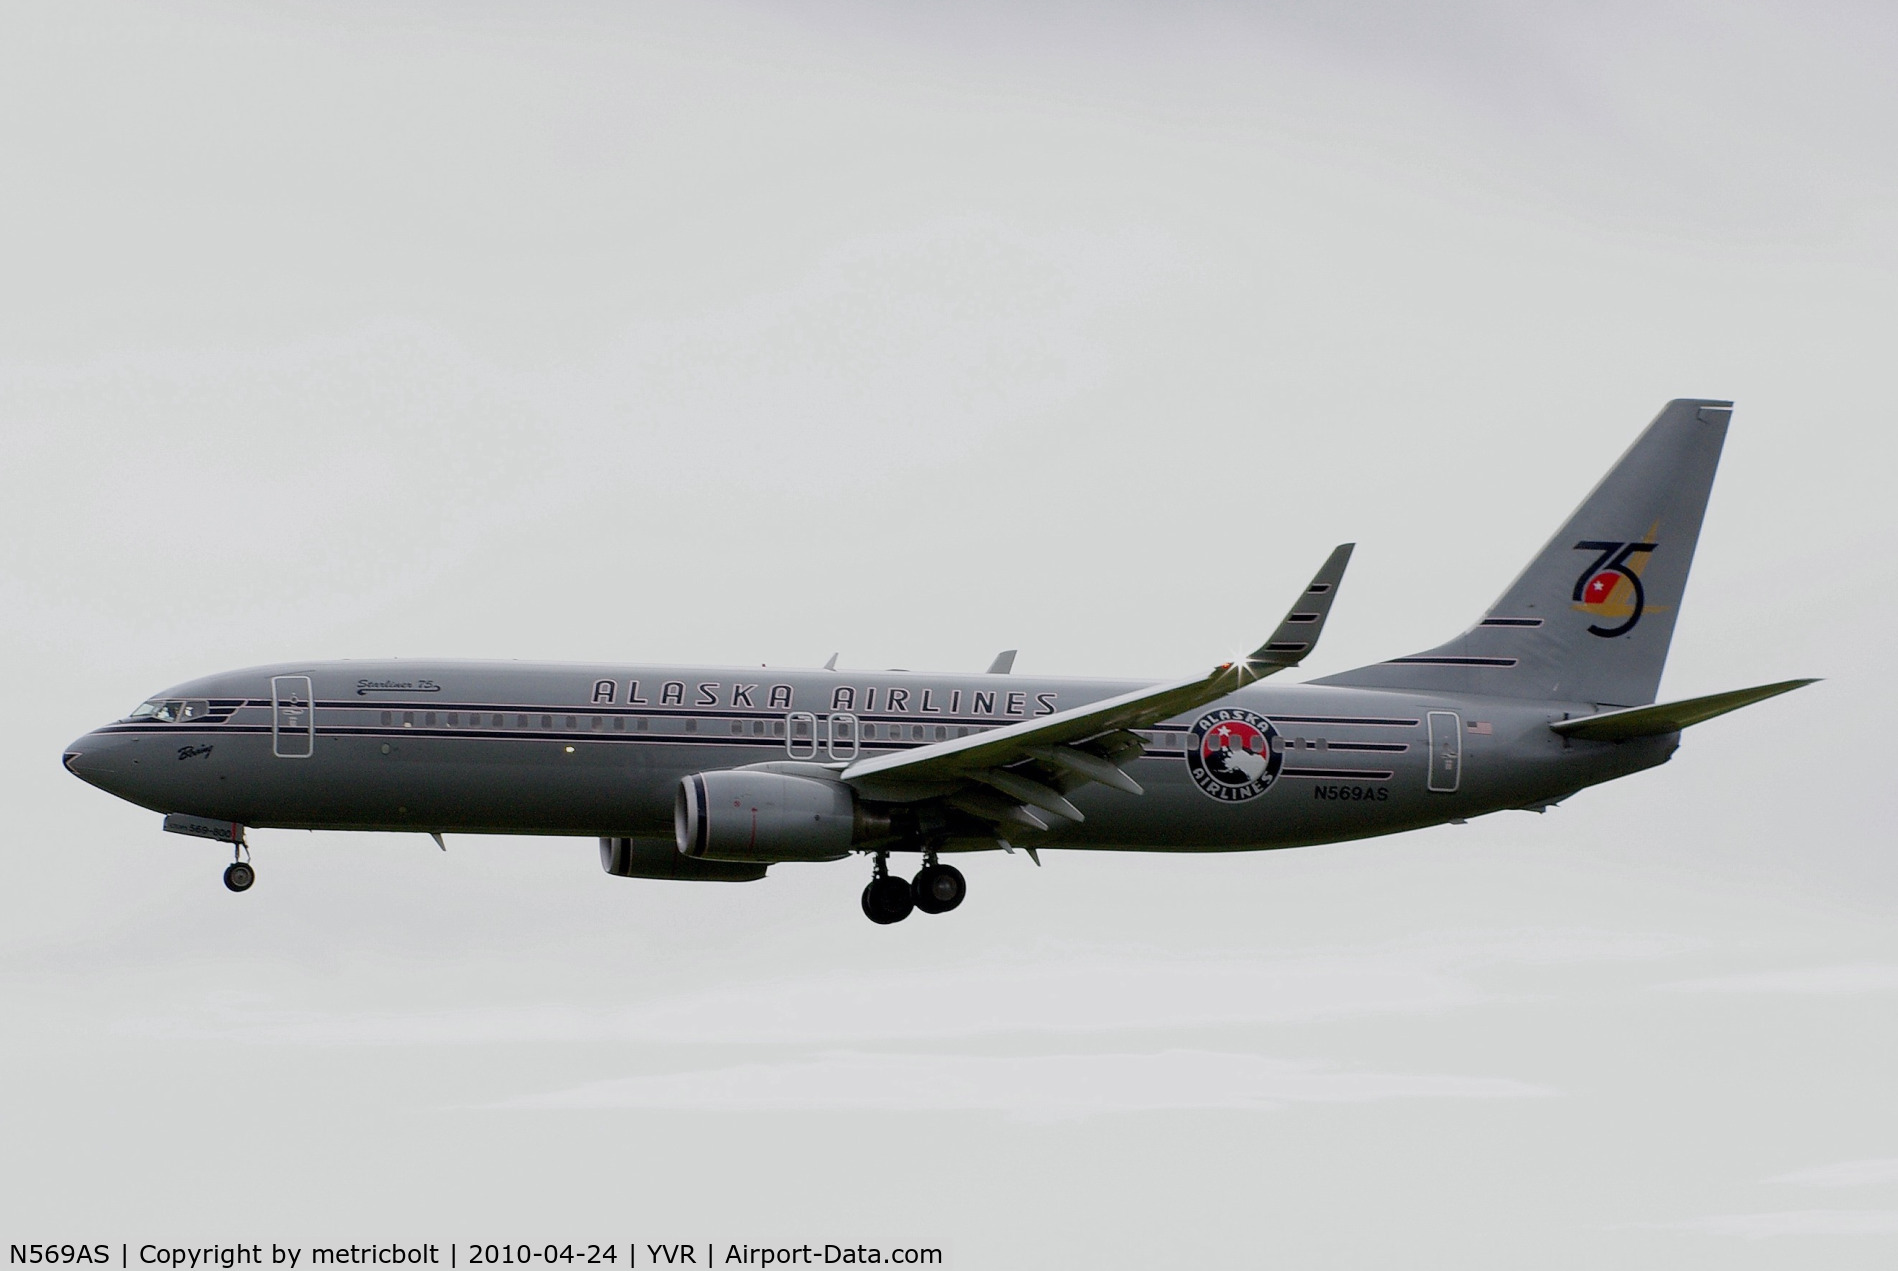 N569AS, 2007 Boeing 737-890 C/N 35184, Landing at YVR